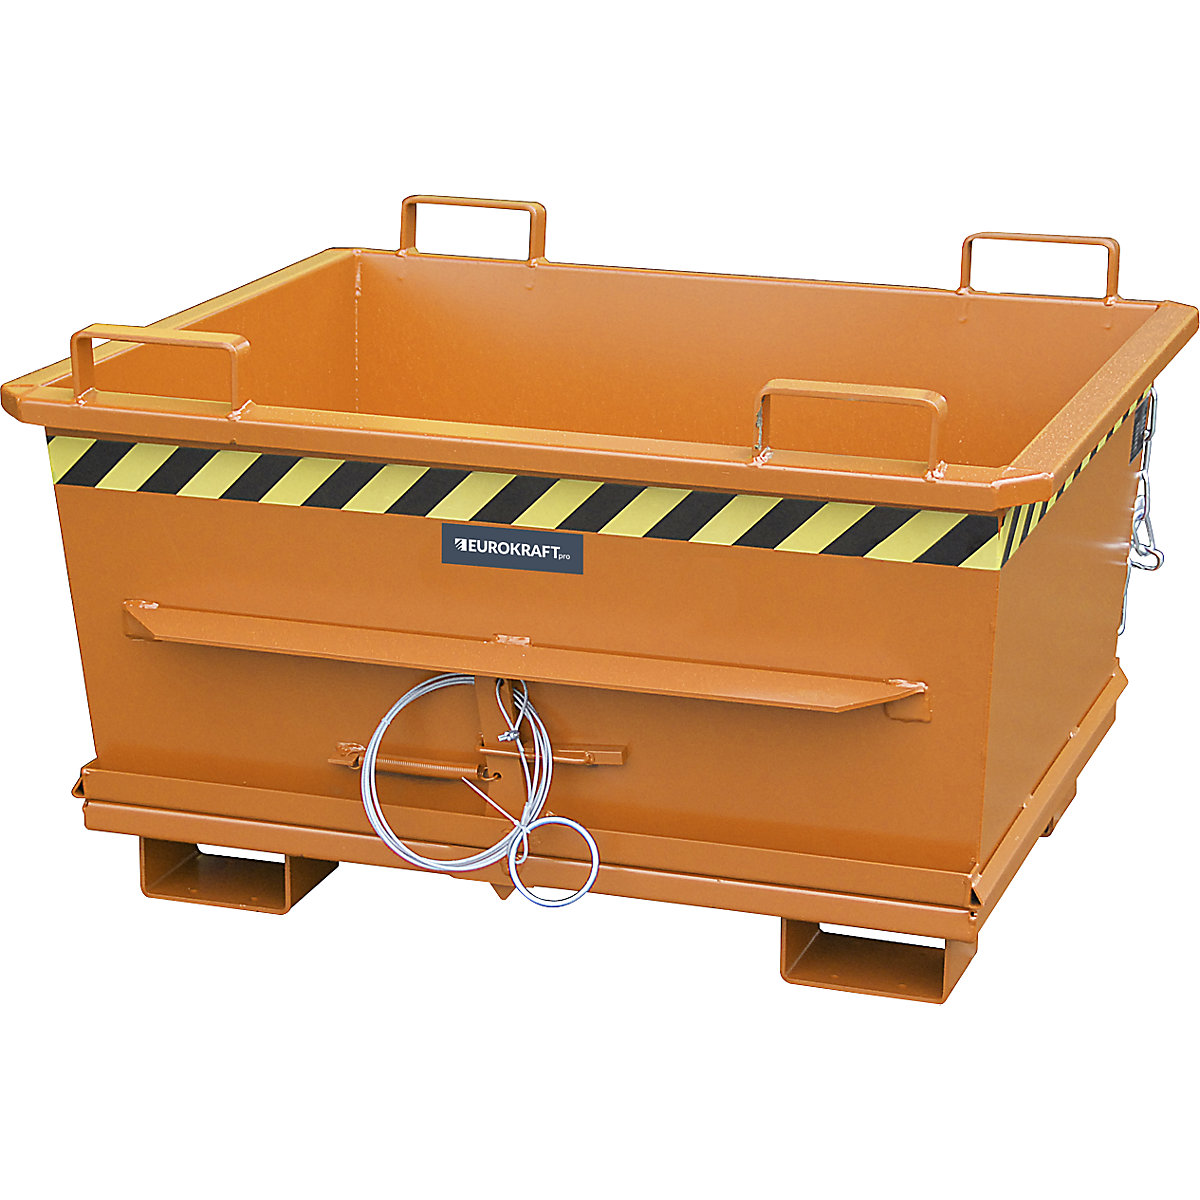 Contenedor cónico con trampilla – eurokraft pro, capacidad 0,5 m³, carga máx. 1000 kg, amarillo naranja RAL 2000-13